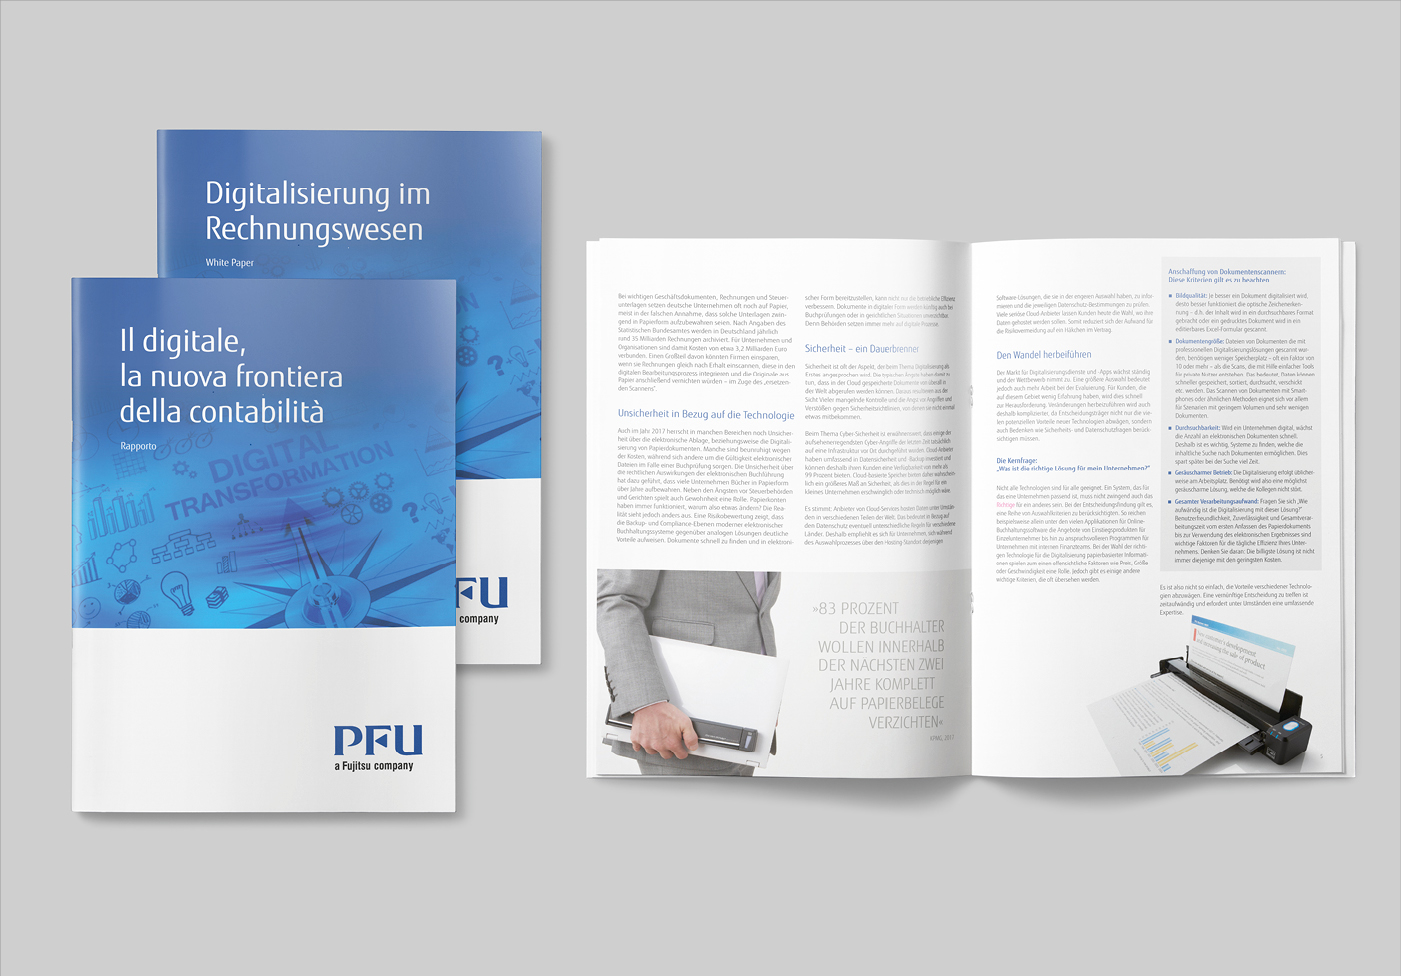 PFU a Fujitsu Company: Bildrecherche, Konzept, Broschüre, Design, Layout und Reinzeichnung. Sprachadaptionen in bis zu 4 Sprachen